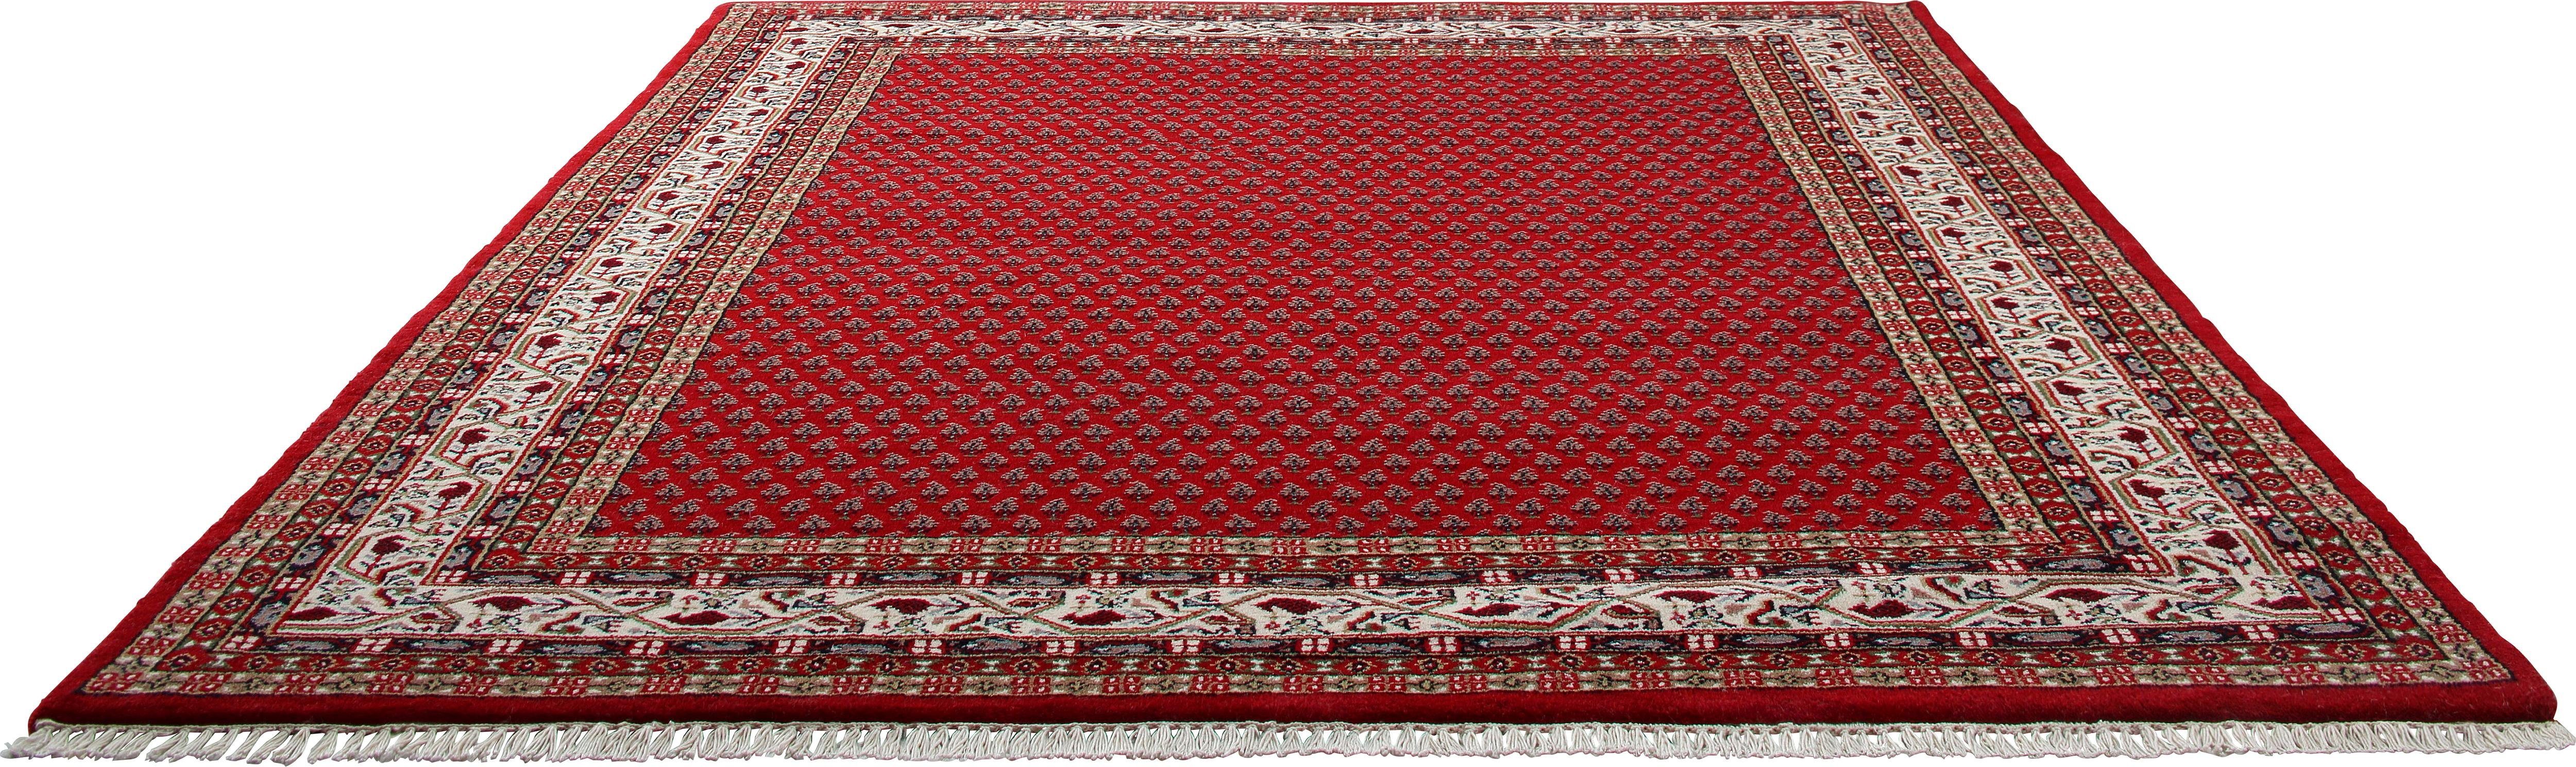 THEKO Oosters tapijt Chandi Mir zuivere wol, met de hand geknoopt, met franje